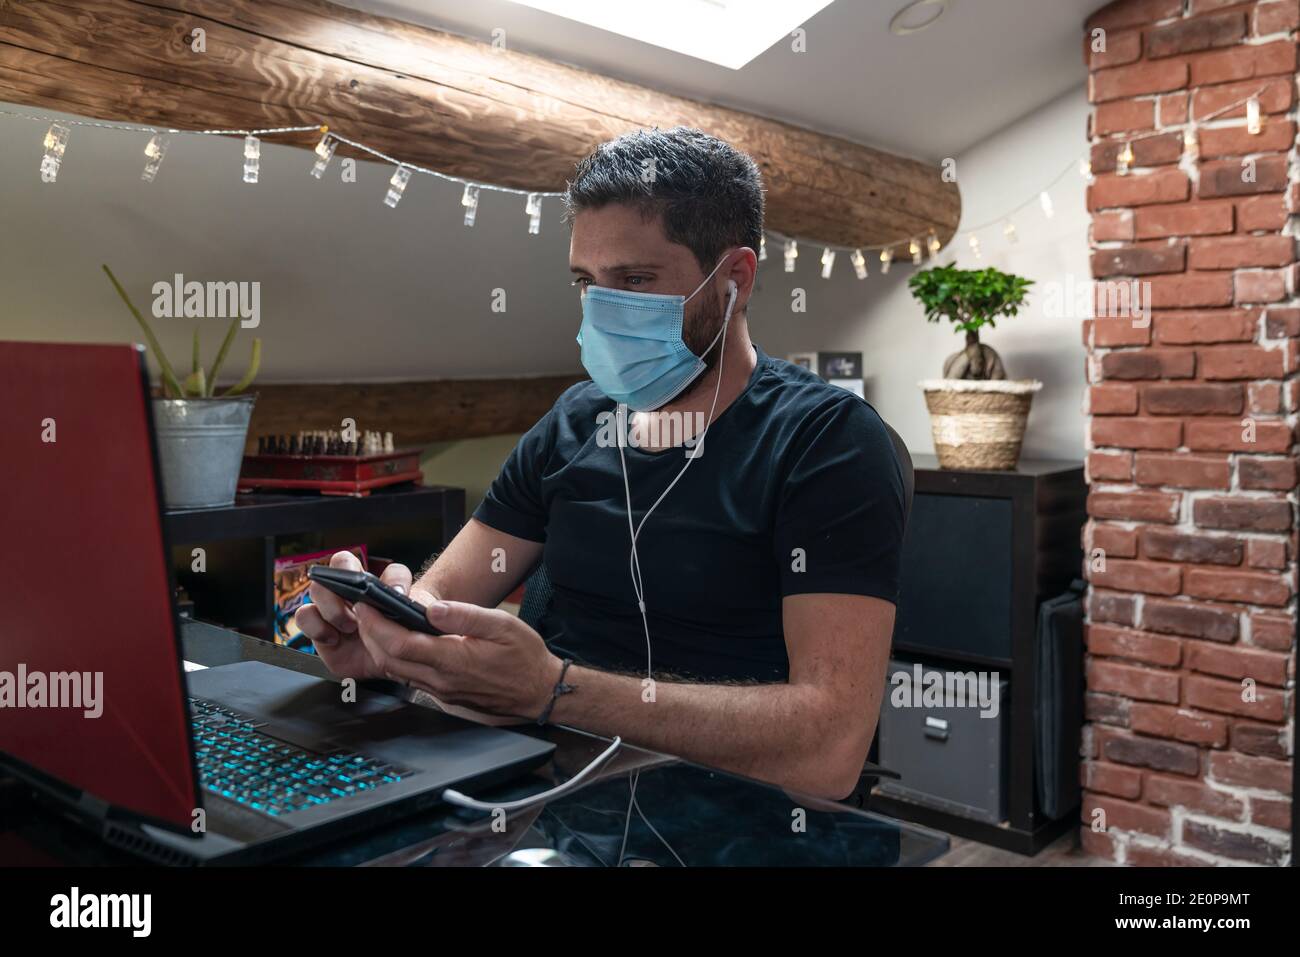 Uomo con maschera chirurgica che lavora da casa causa di confinamento per il coronavirus covid-19 Foto Stock